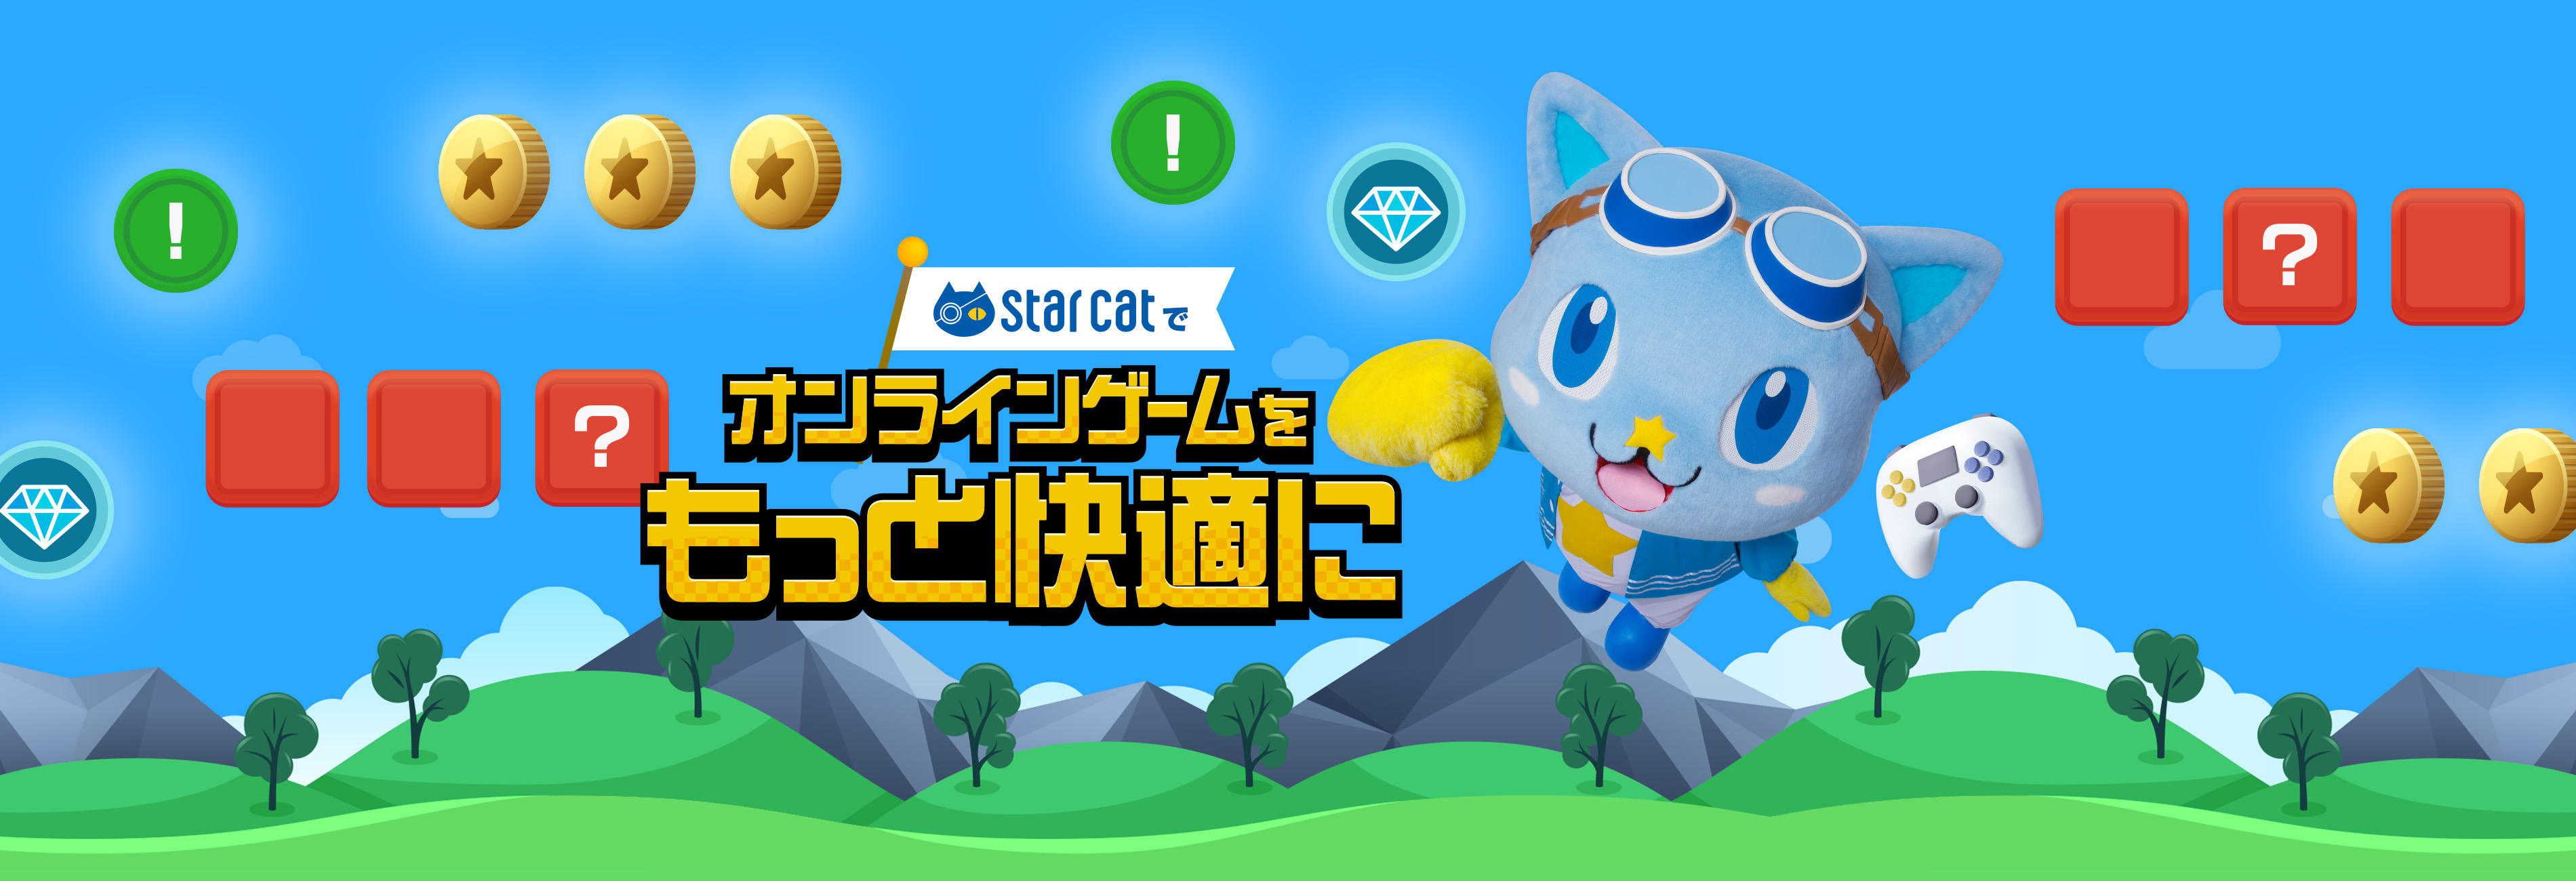 starcatでオンラインゲームをもっと快適に！